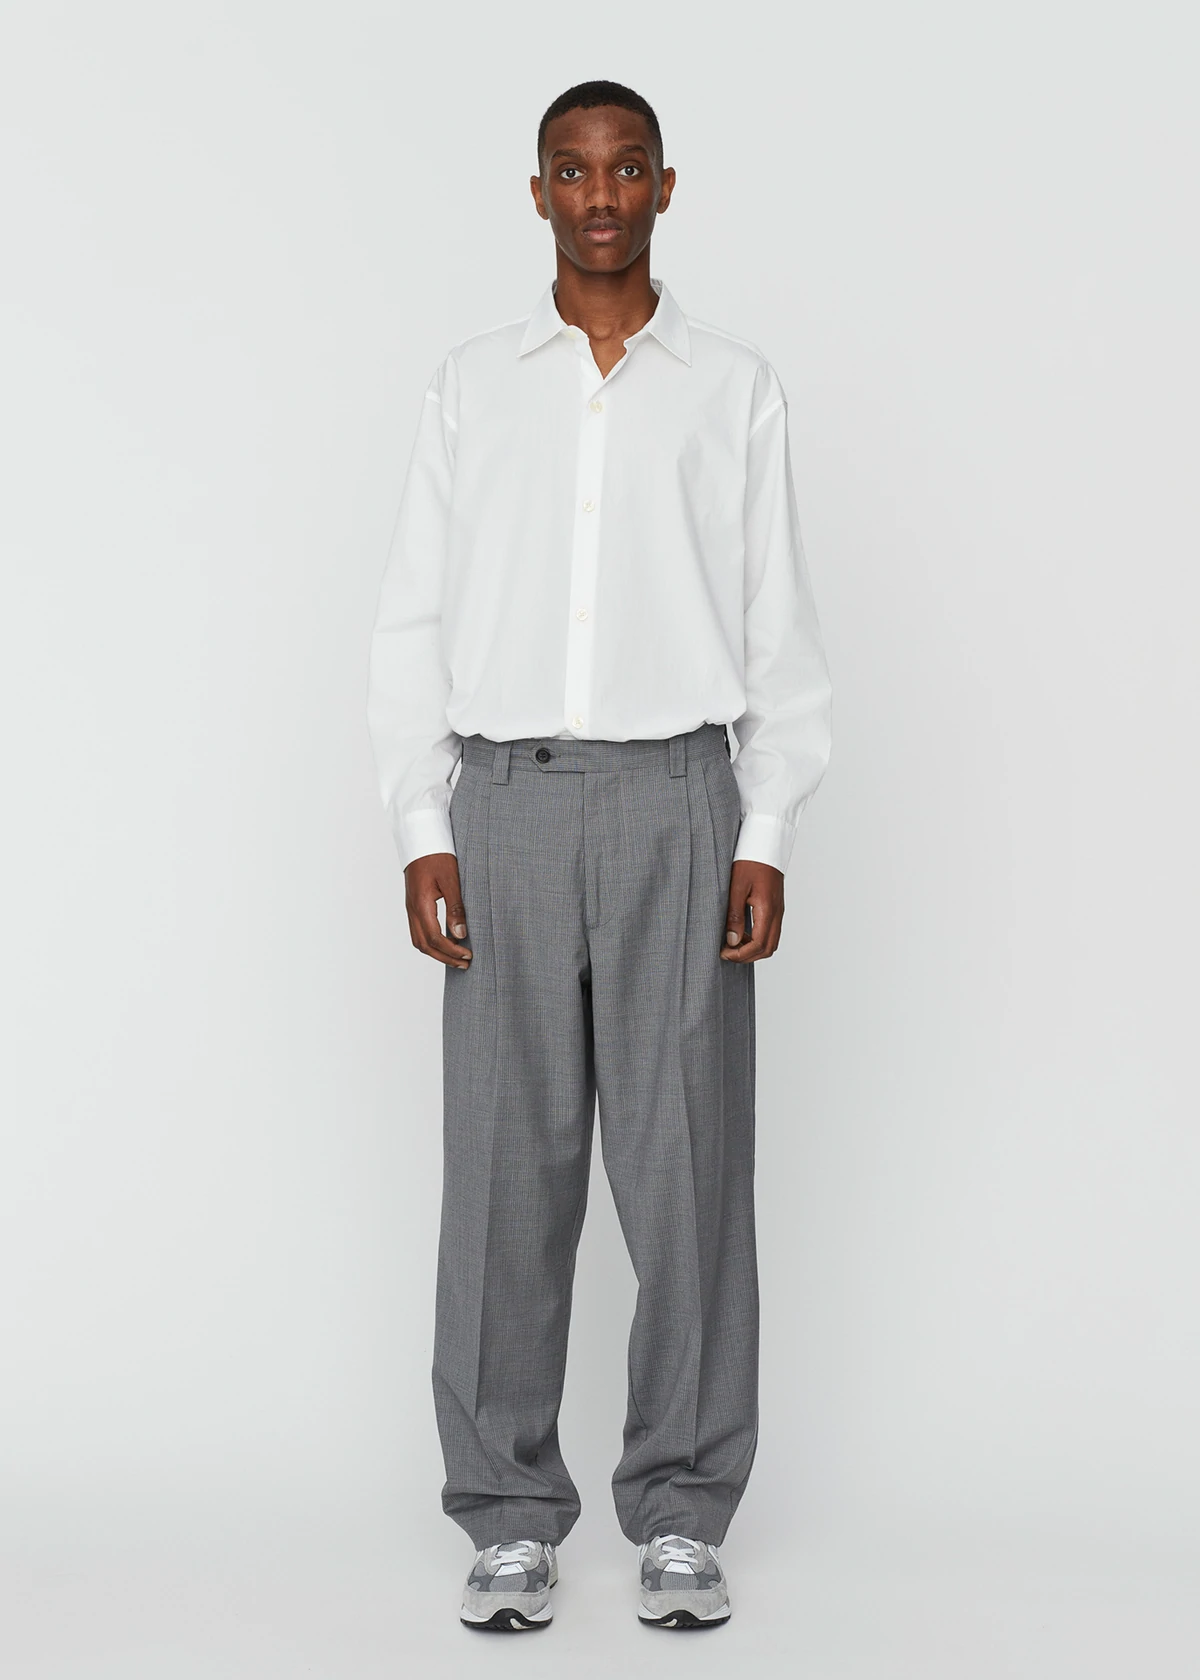 mfpen look homme chemise blanche pantalon oversize gris